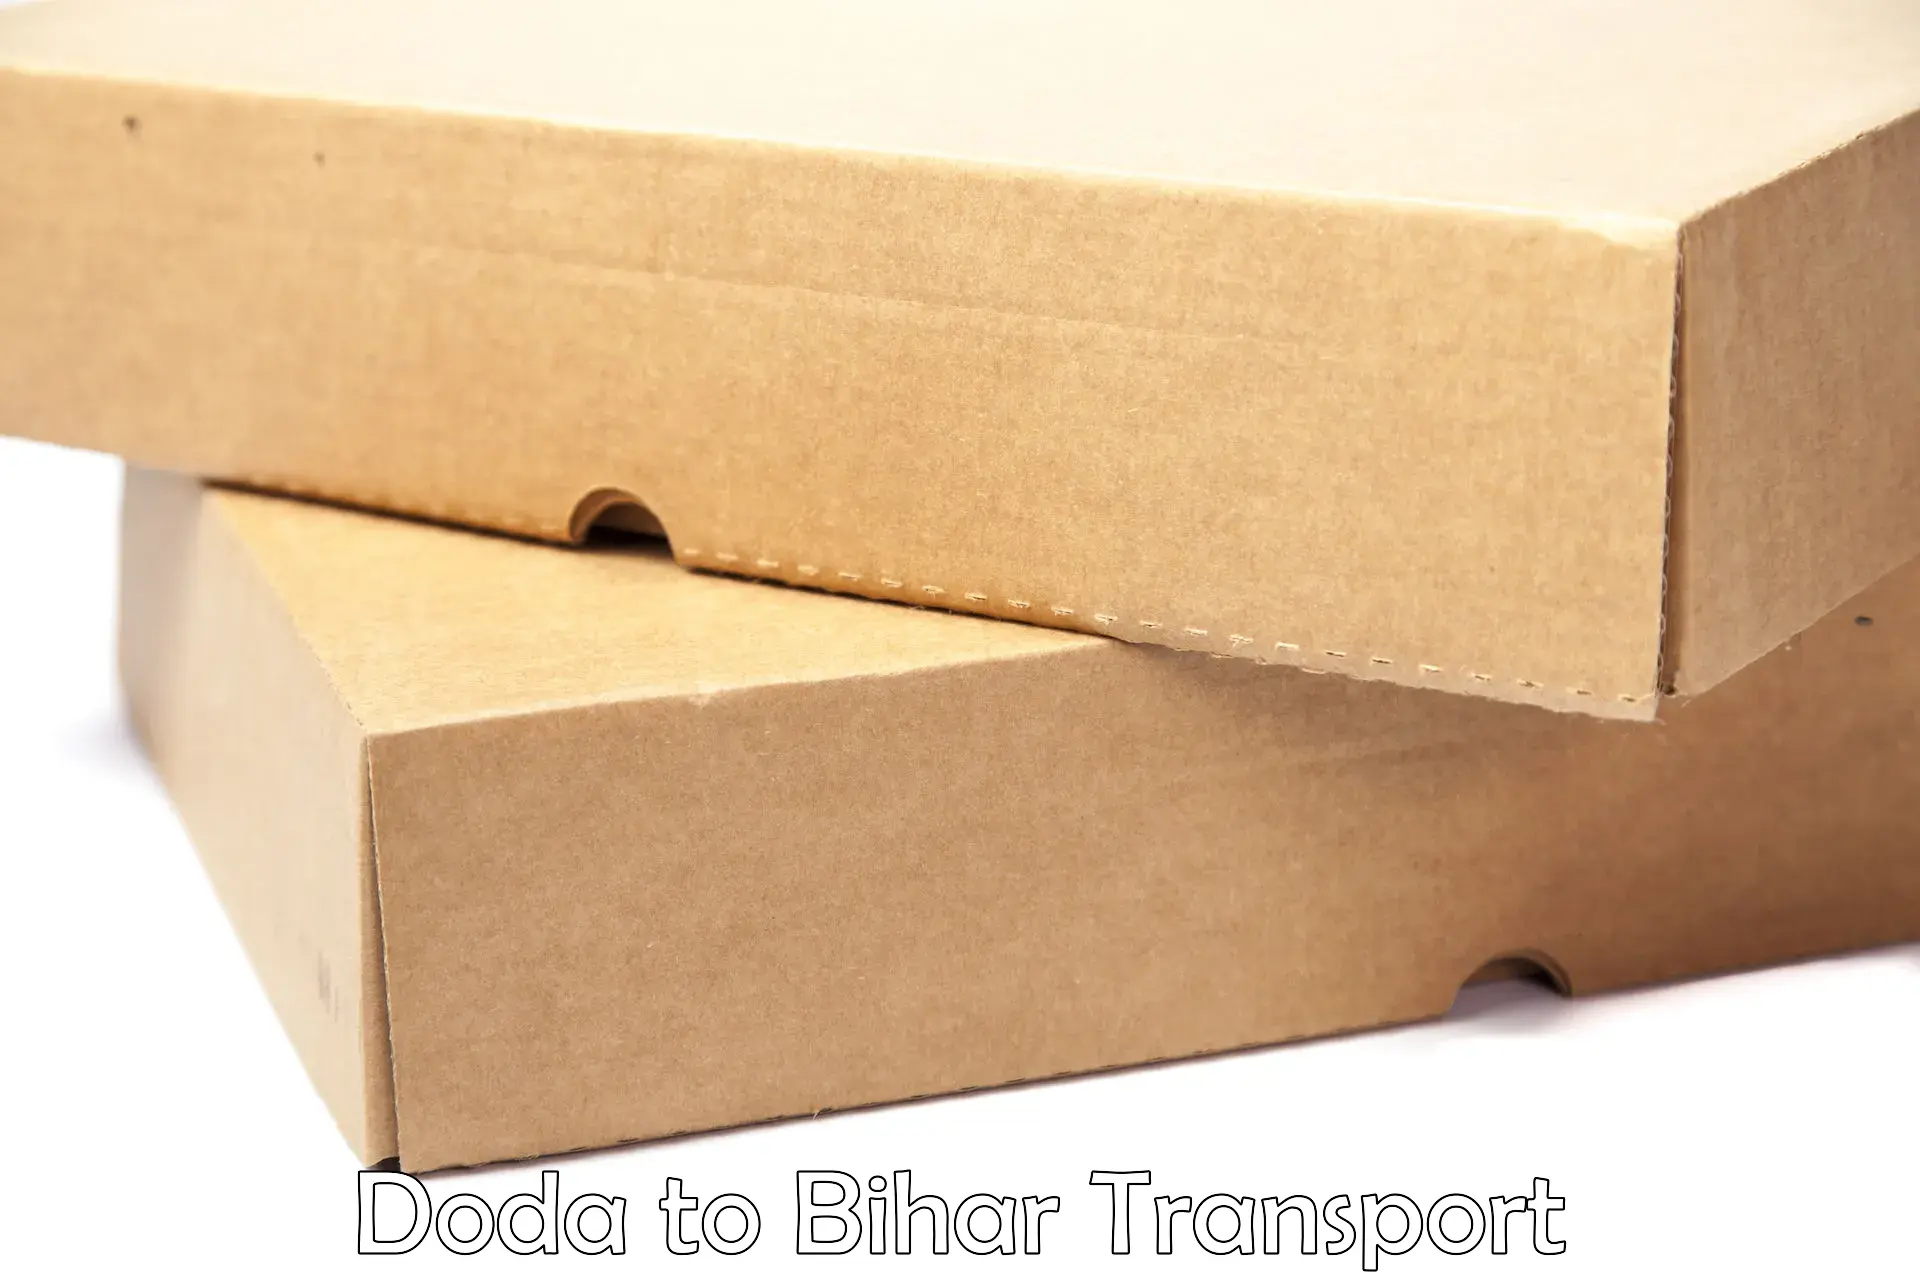 Online transport booking Doda to Bihar